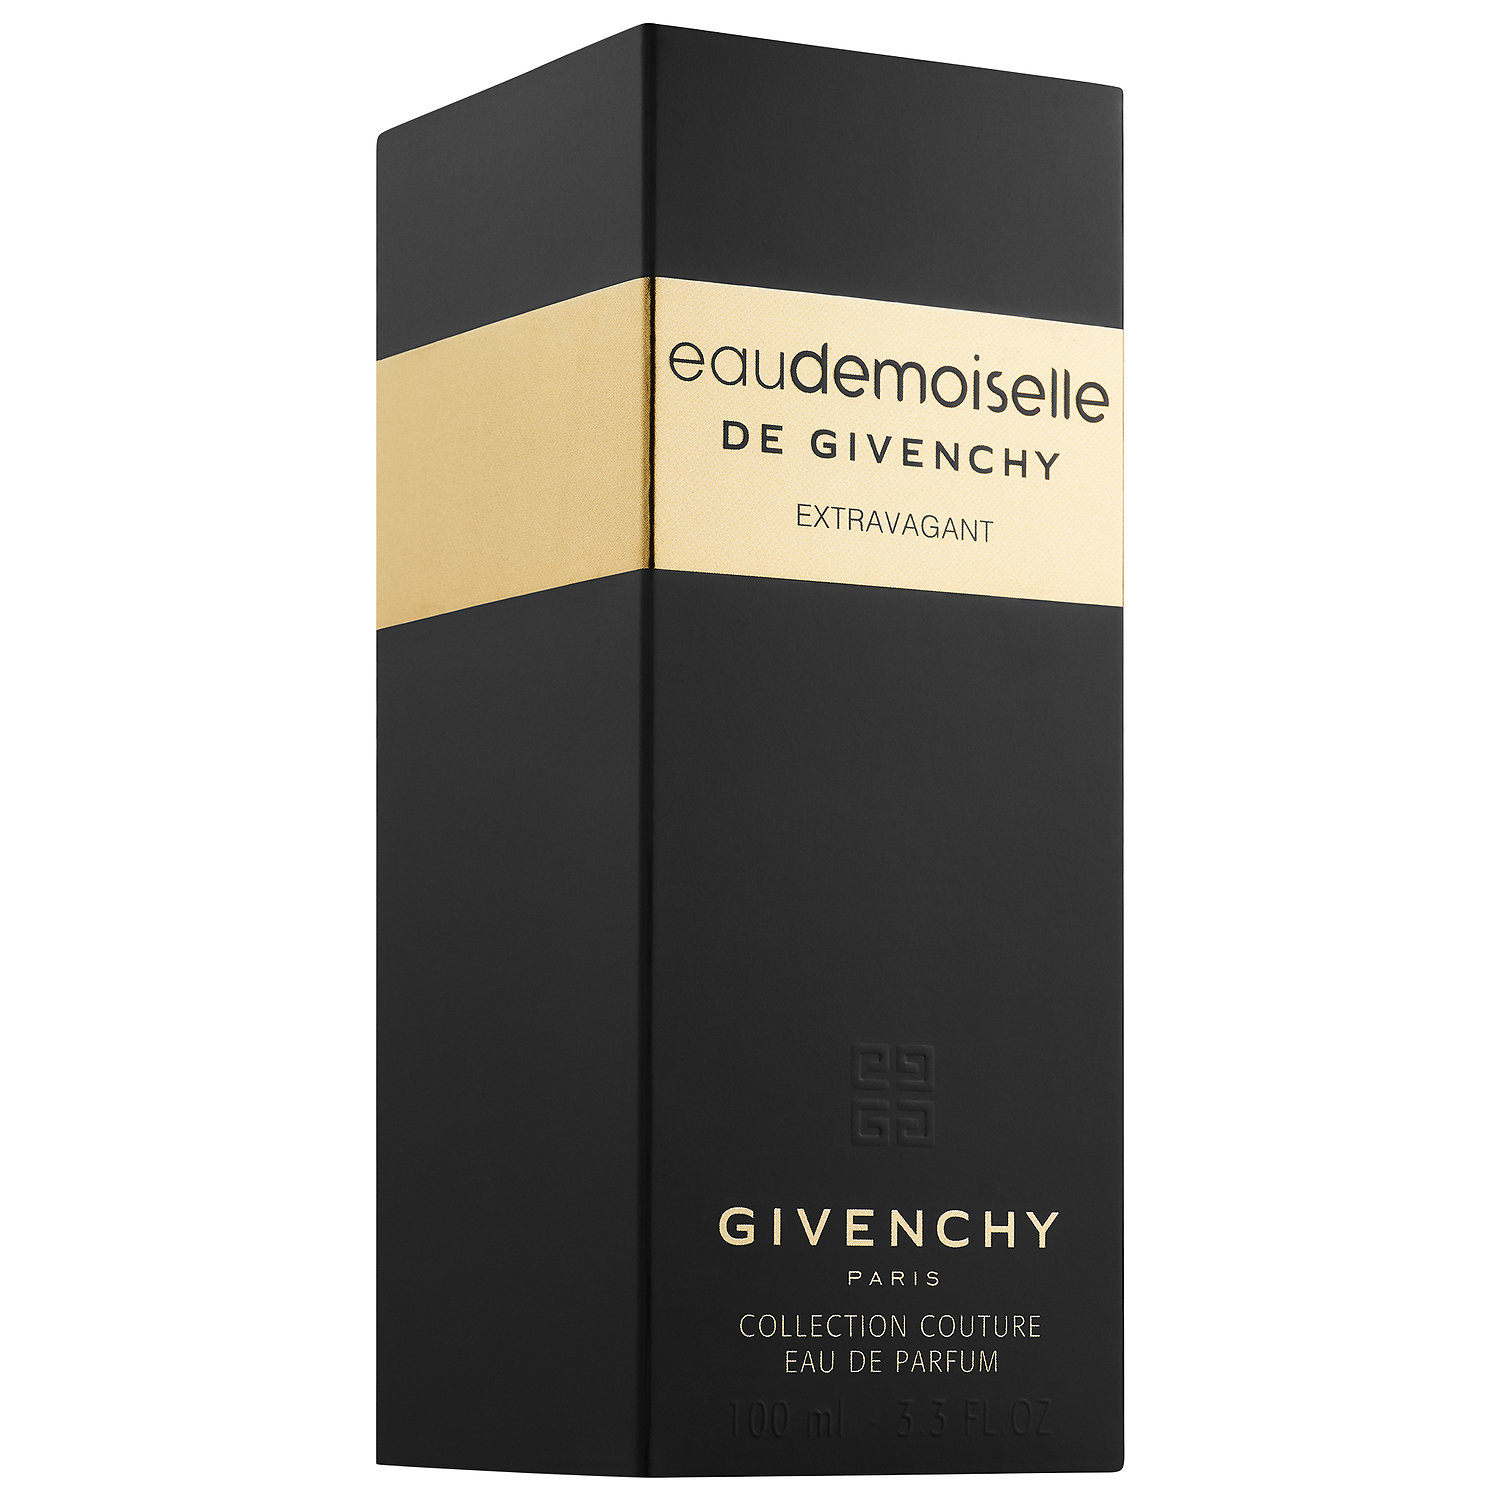 Eaudemoiselle de Givenchy Extravagant 